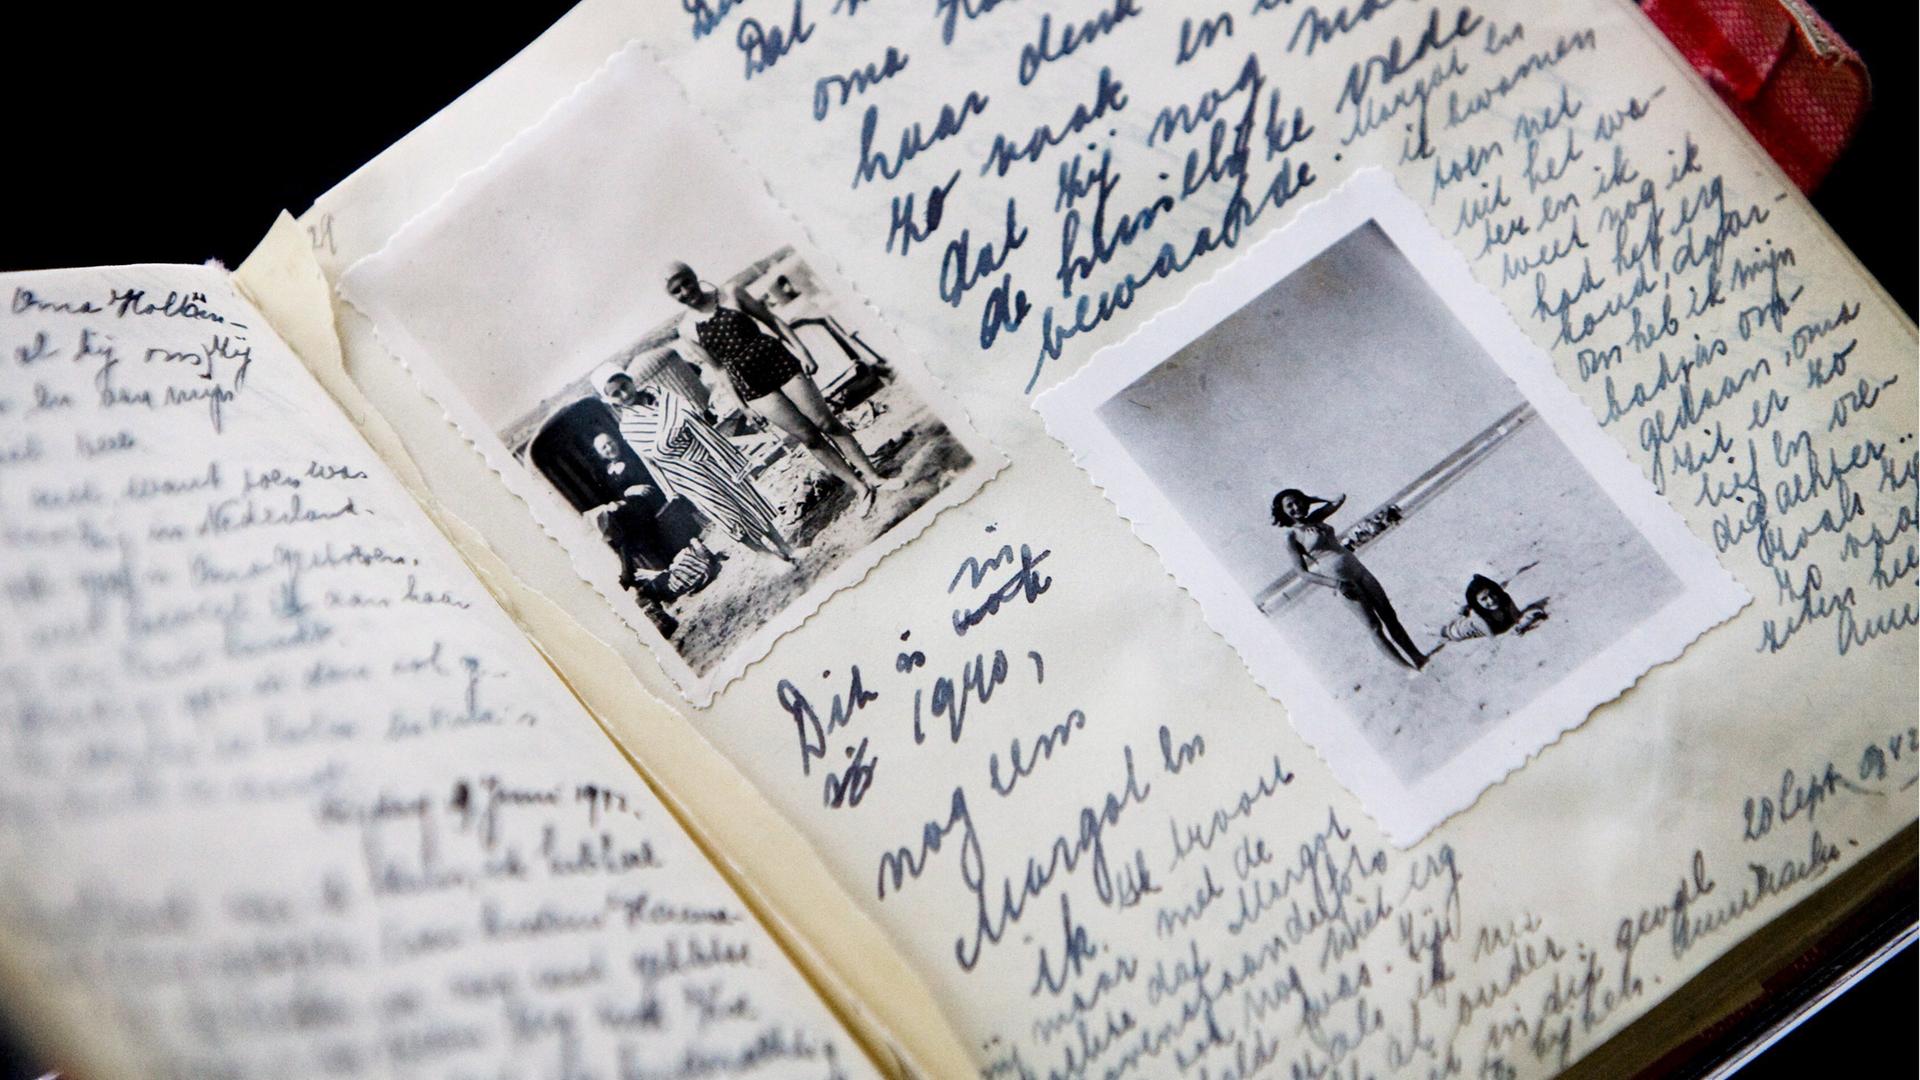 Großaufnahme eines handschriftlich gefüllten Notizbuches, in das Fotos eingeklebt wurden.